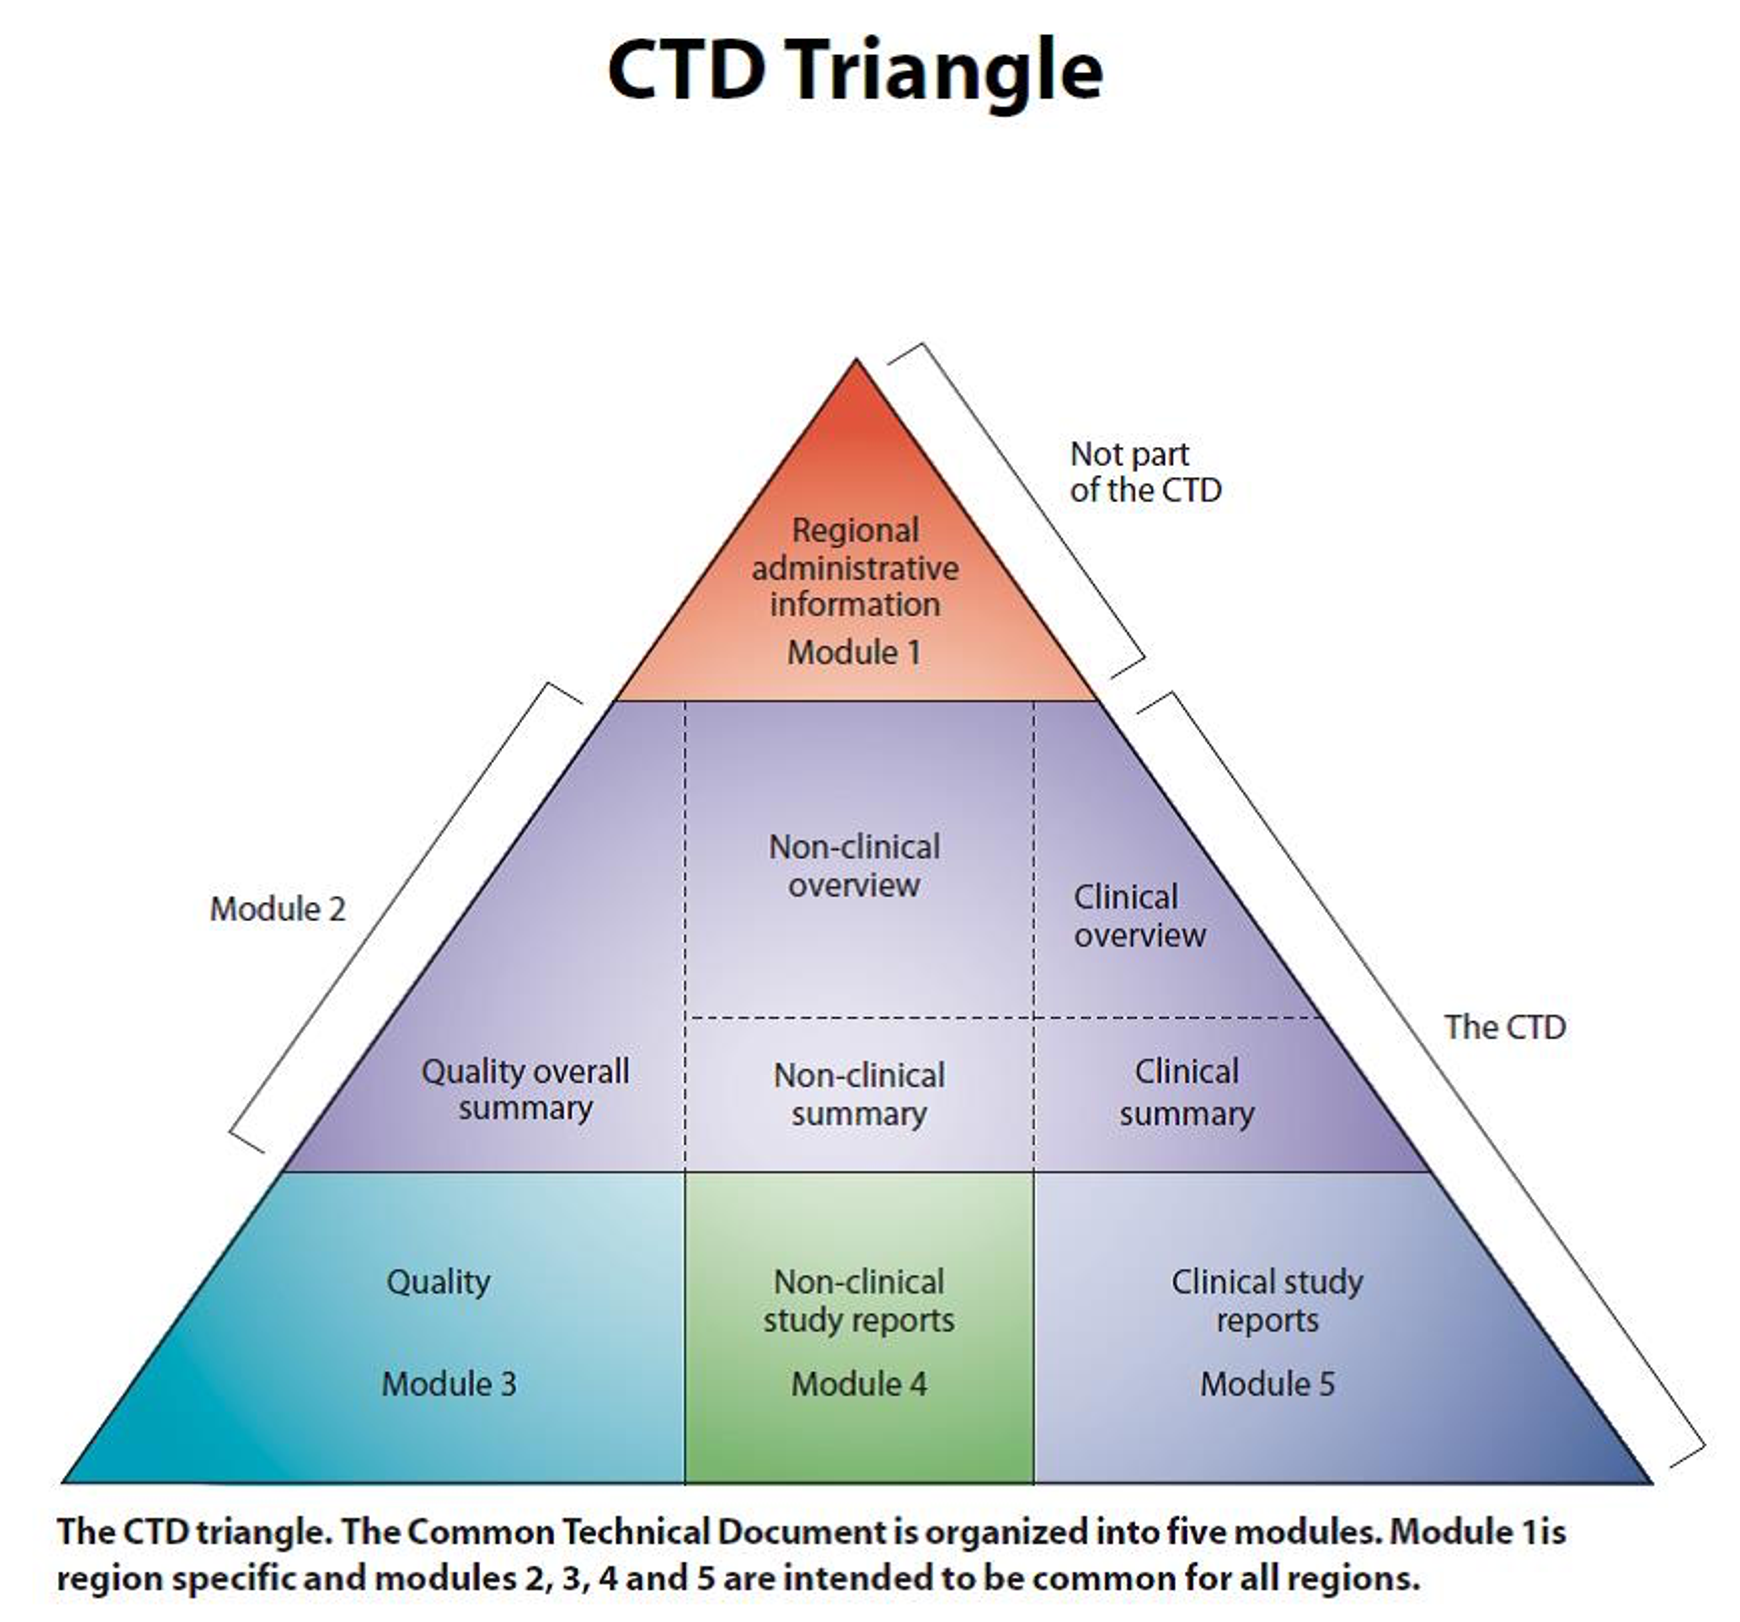 규제 기관에 제출하는 디지털 데이터 양식인 CTD Triangle